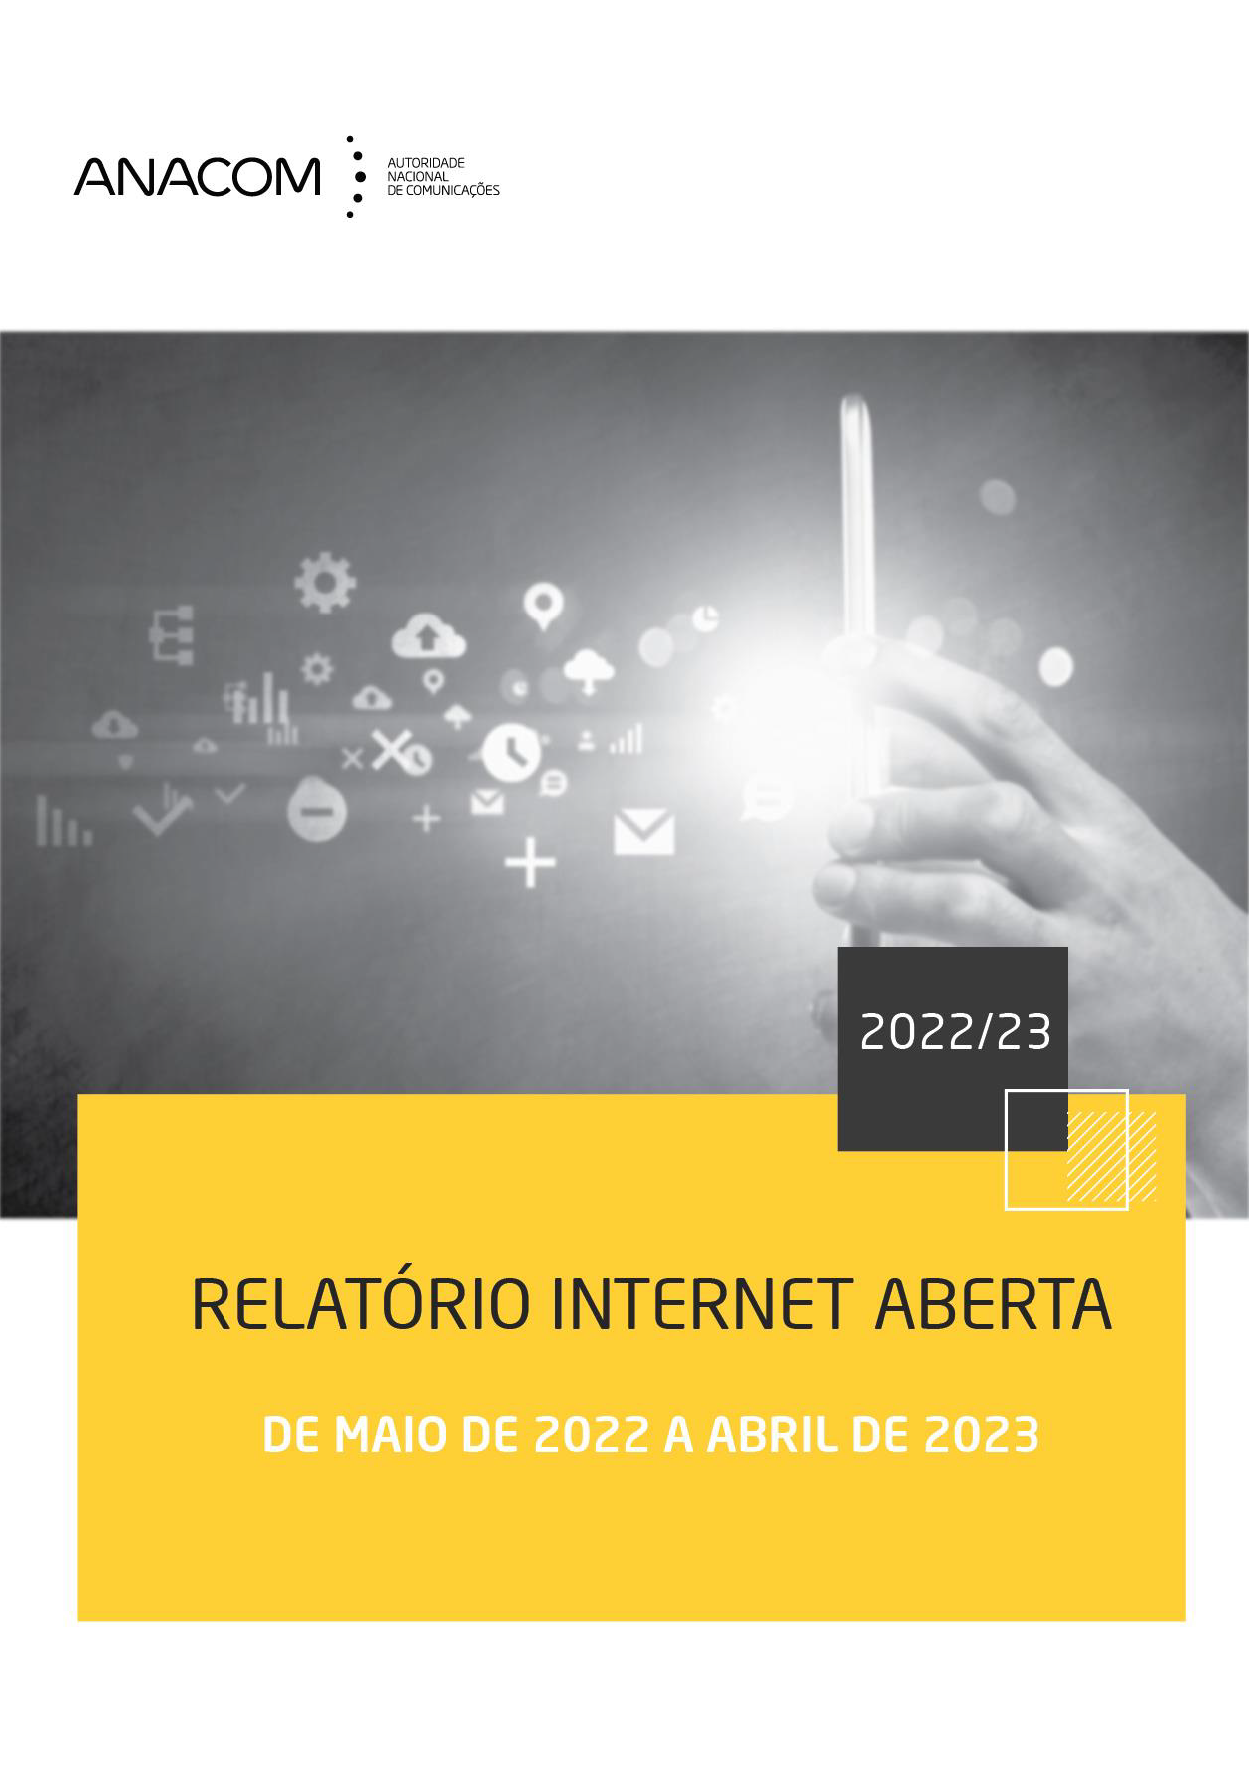 Relatório relativo à Internet aberta